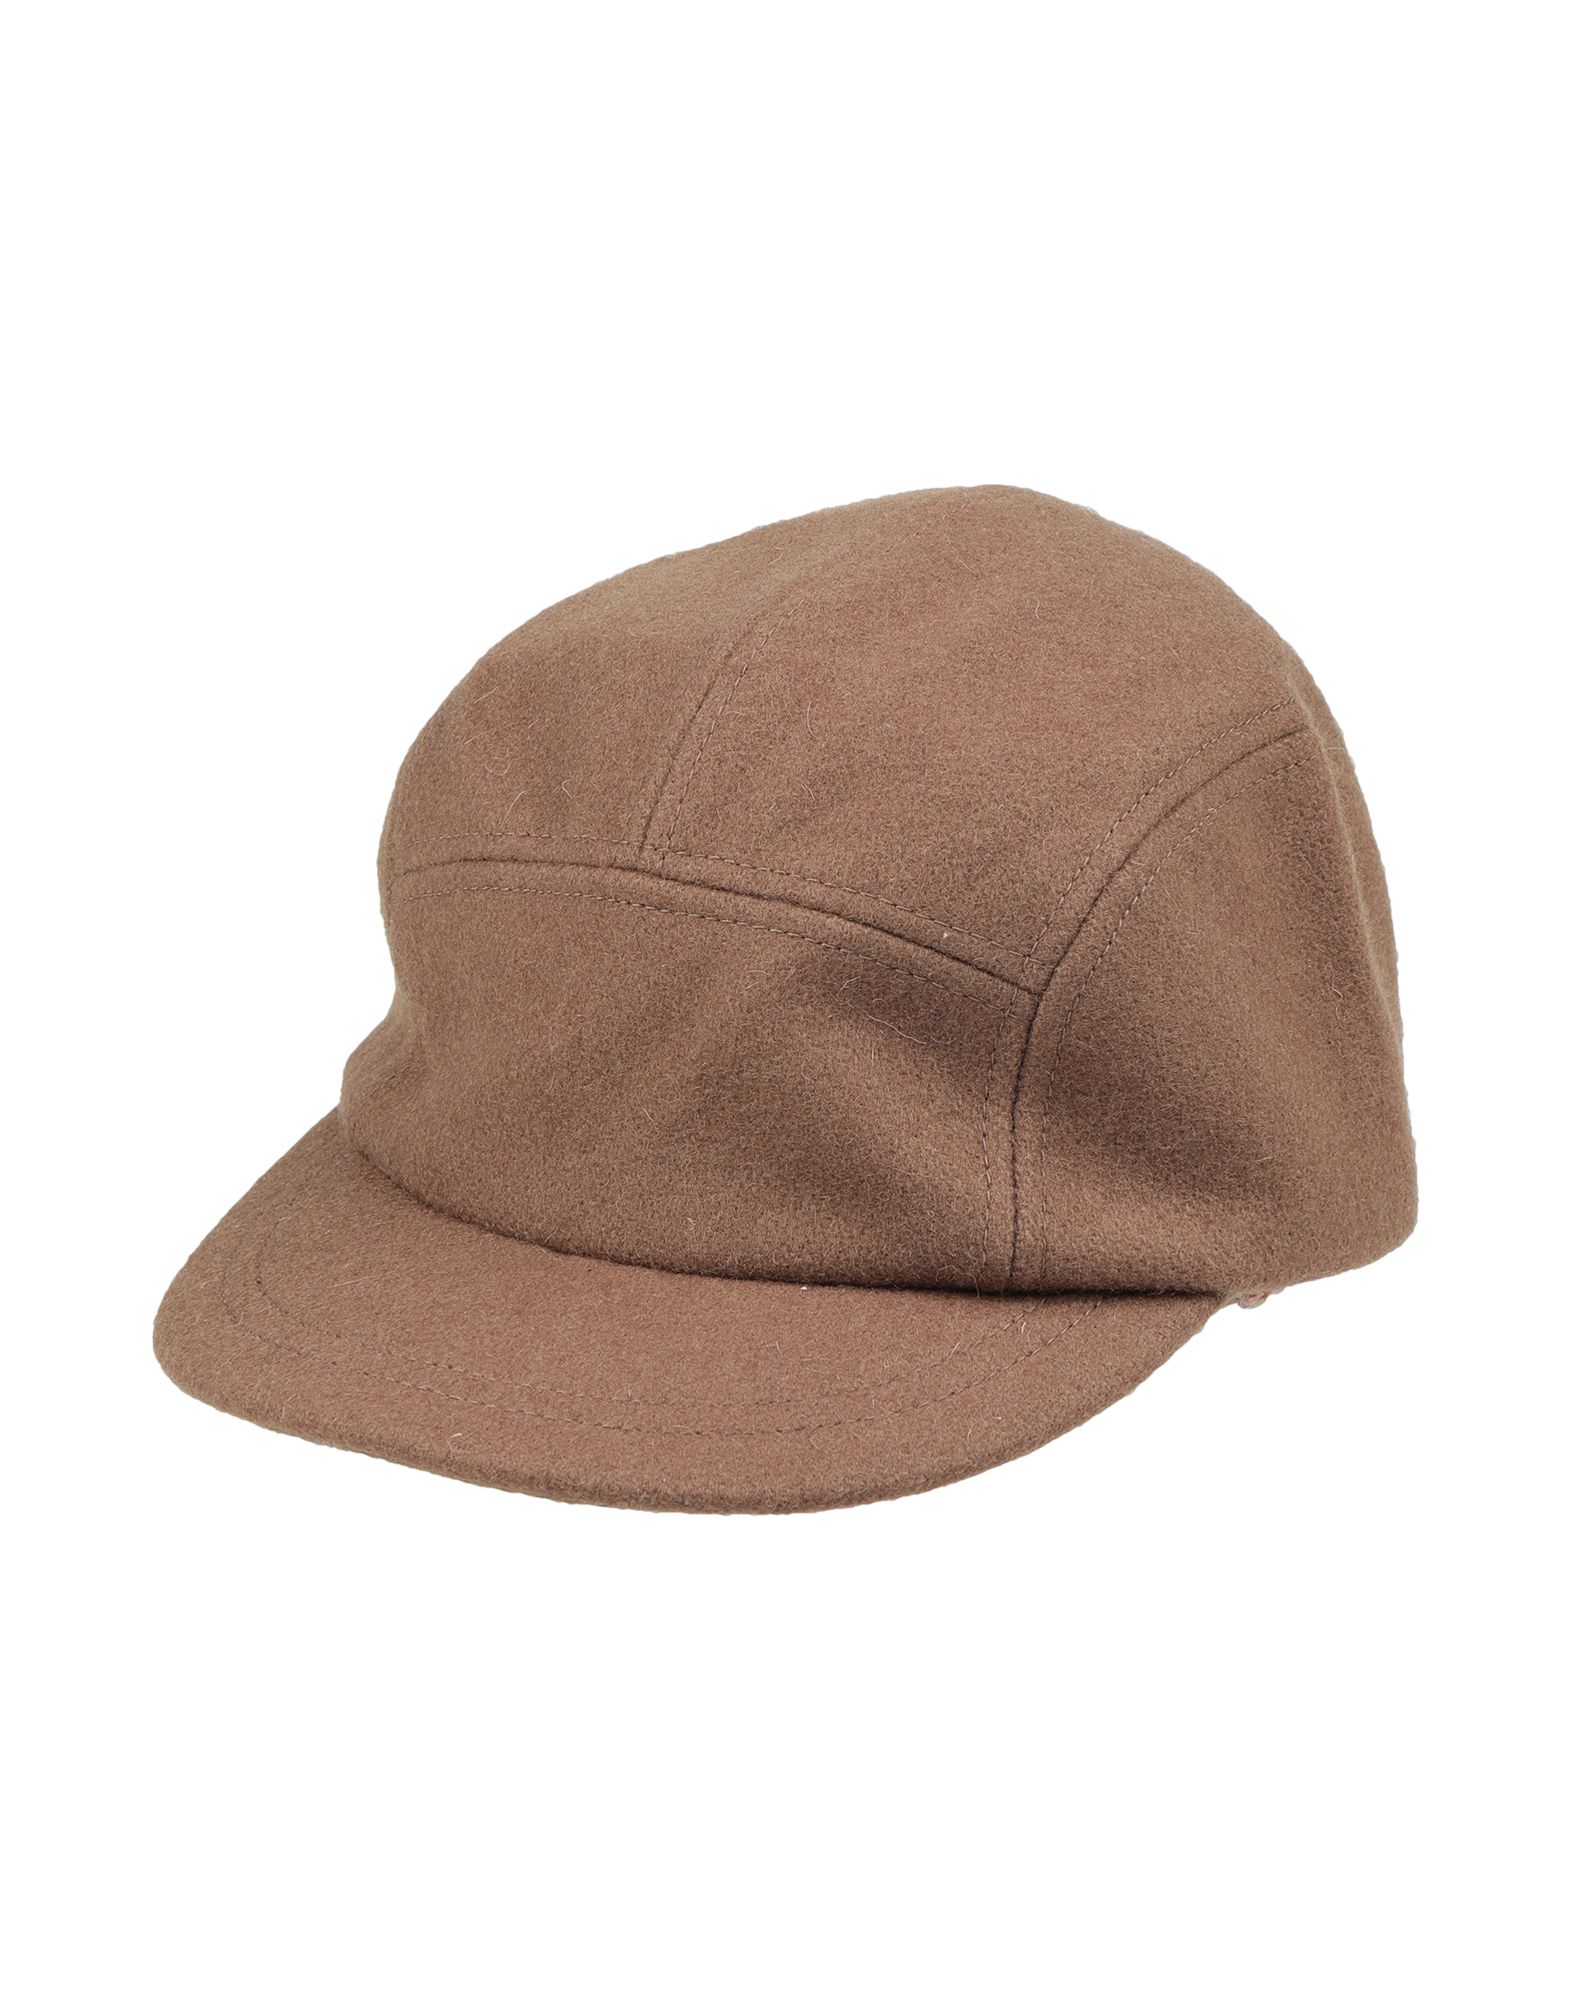 《送料無料》MAPLE メンズ 帽子 キャメル one size ウール 100%